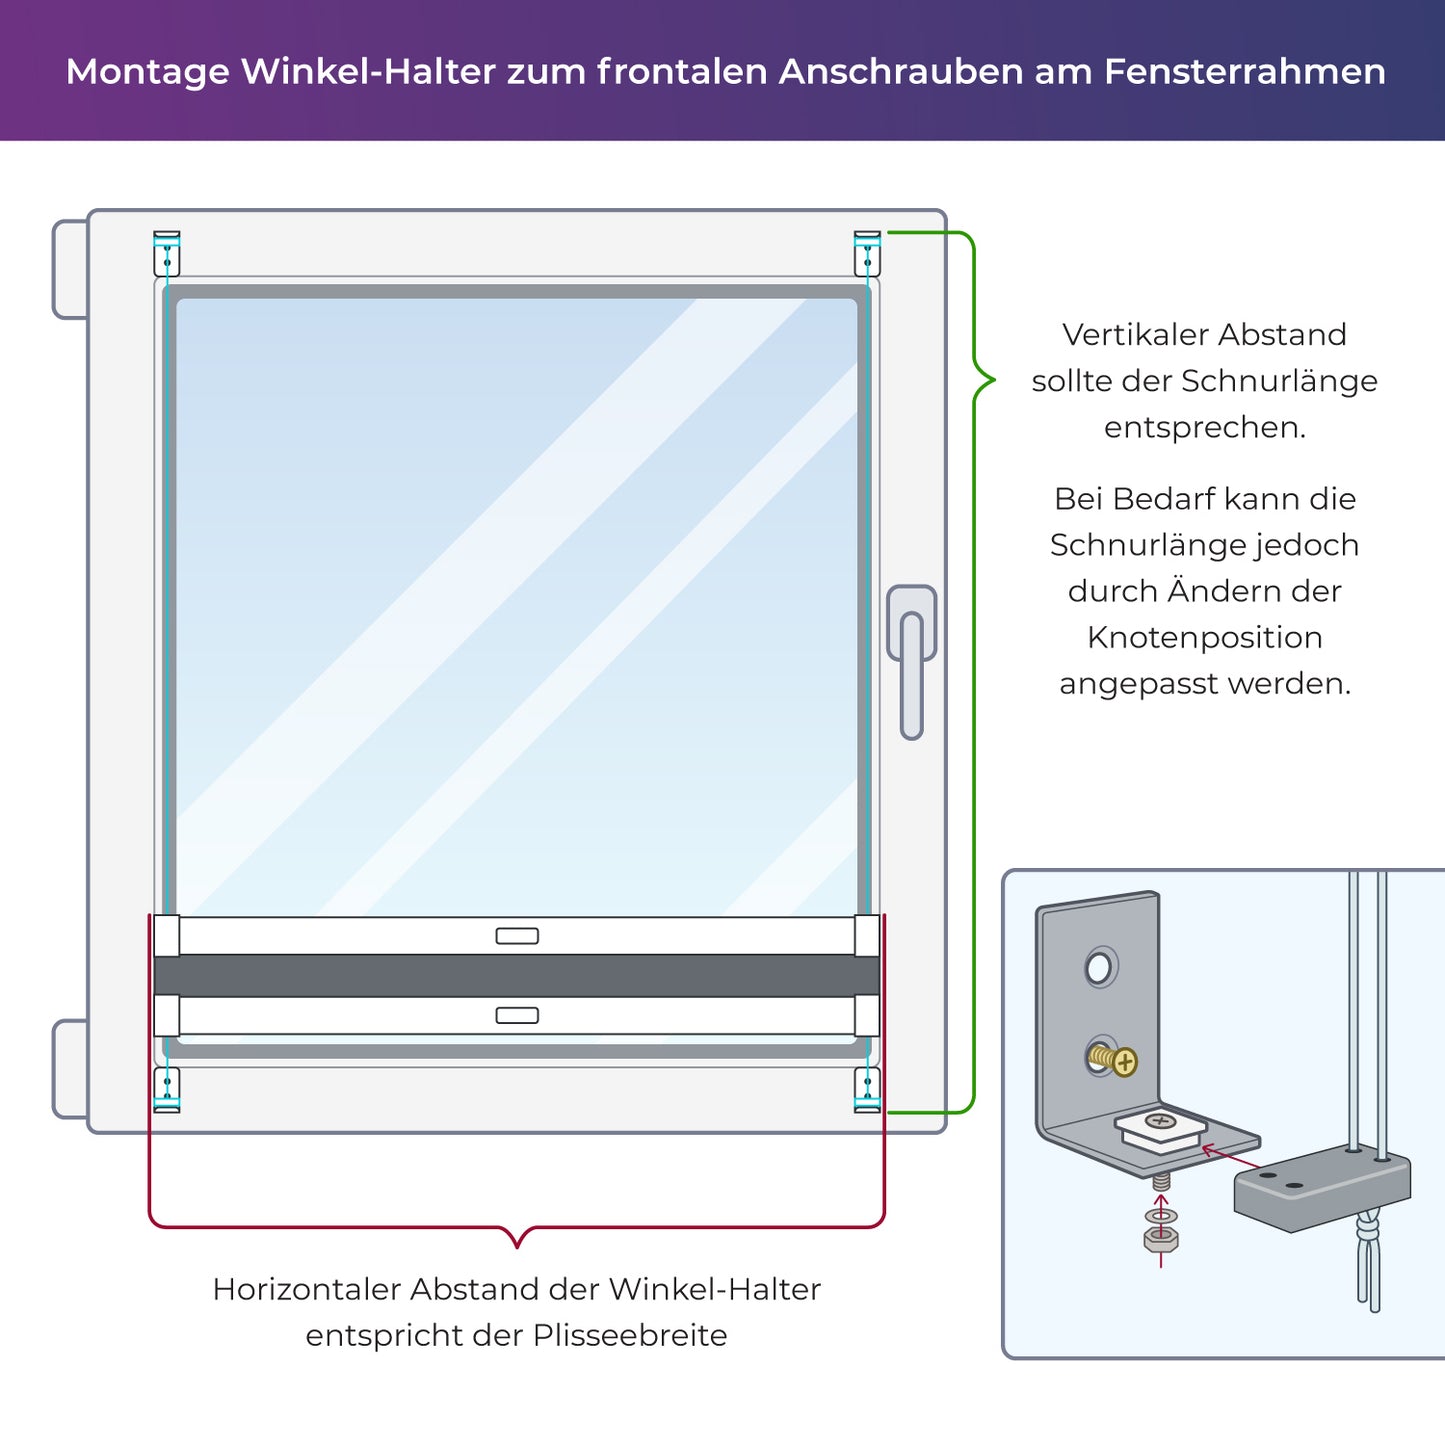 4x-Set Metall-Winkel-Träger für Montage verspannter Plissees am Fensterrahmen oder Wand